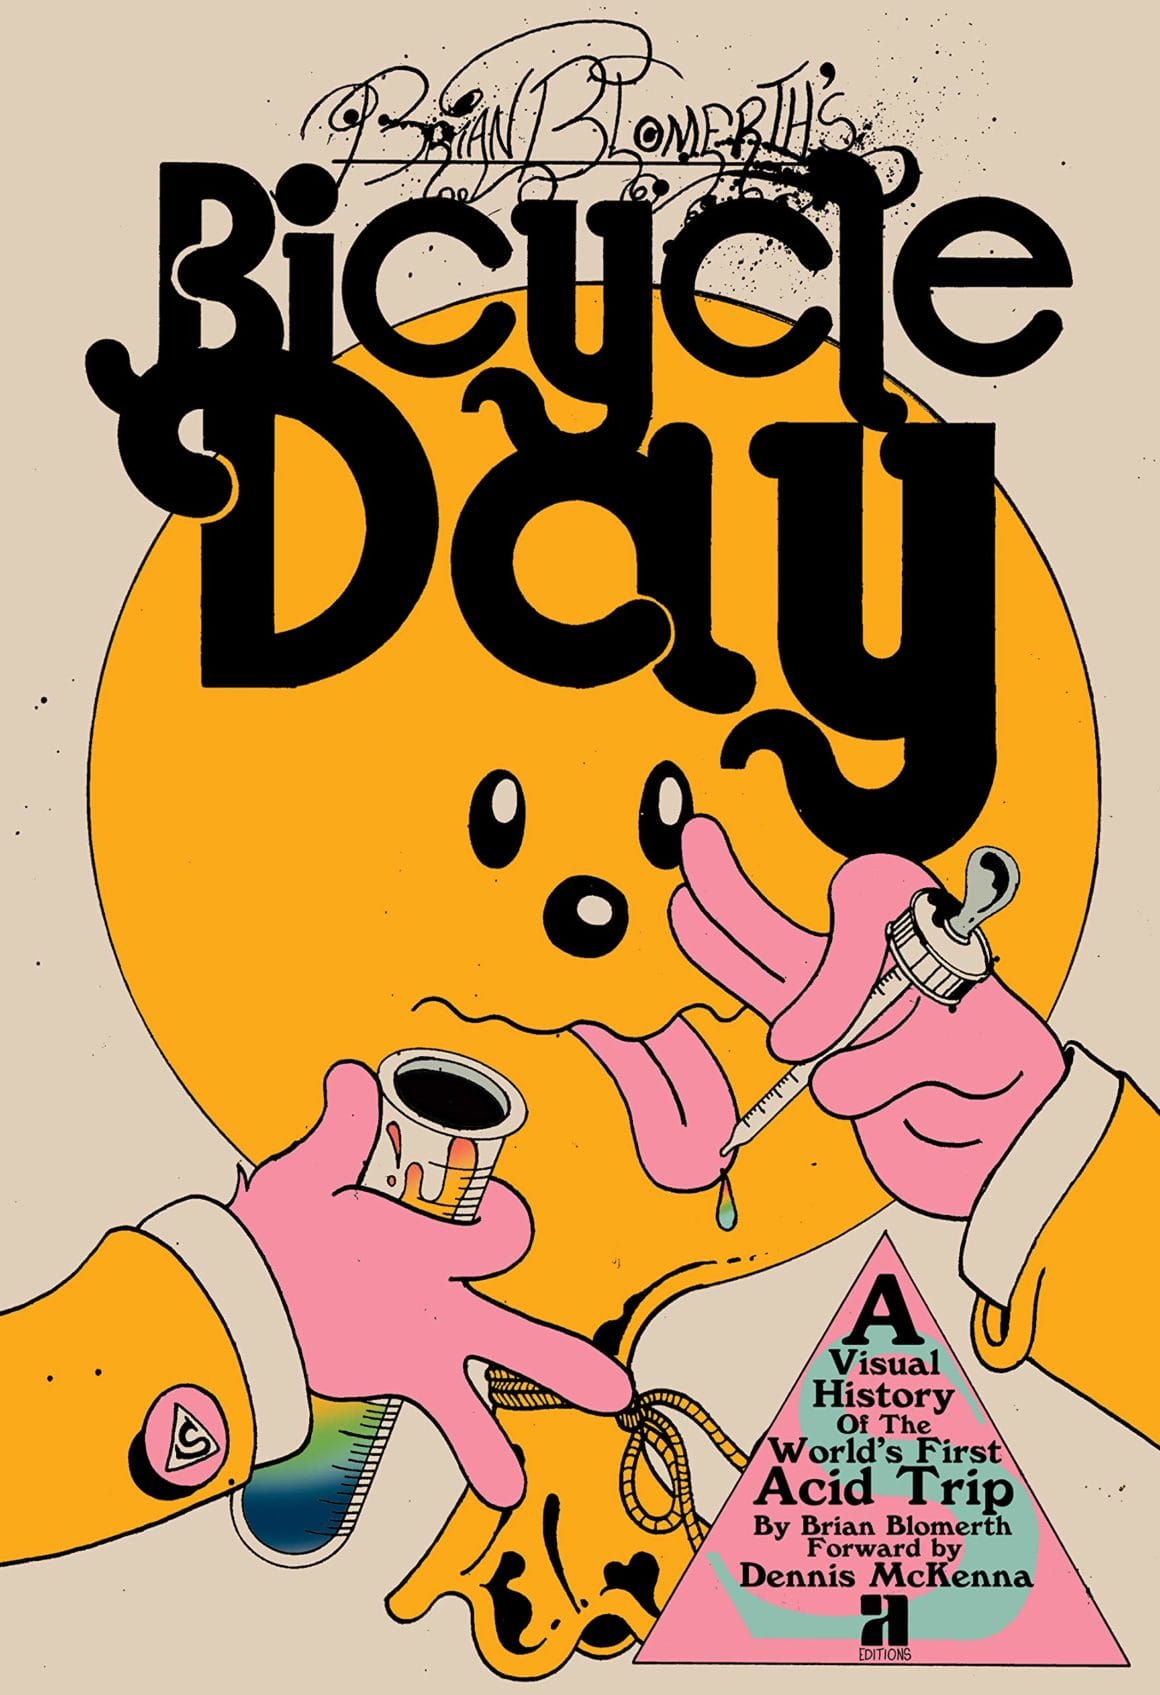 Brian Blomerth, couverture de "Bicycle Day" avec une main tenant une seringue l'autre une pipette devant un ballon. 